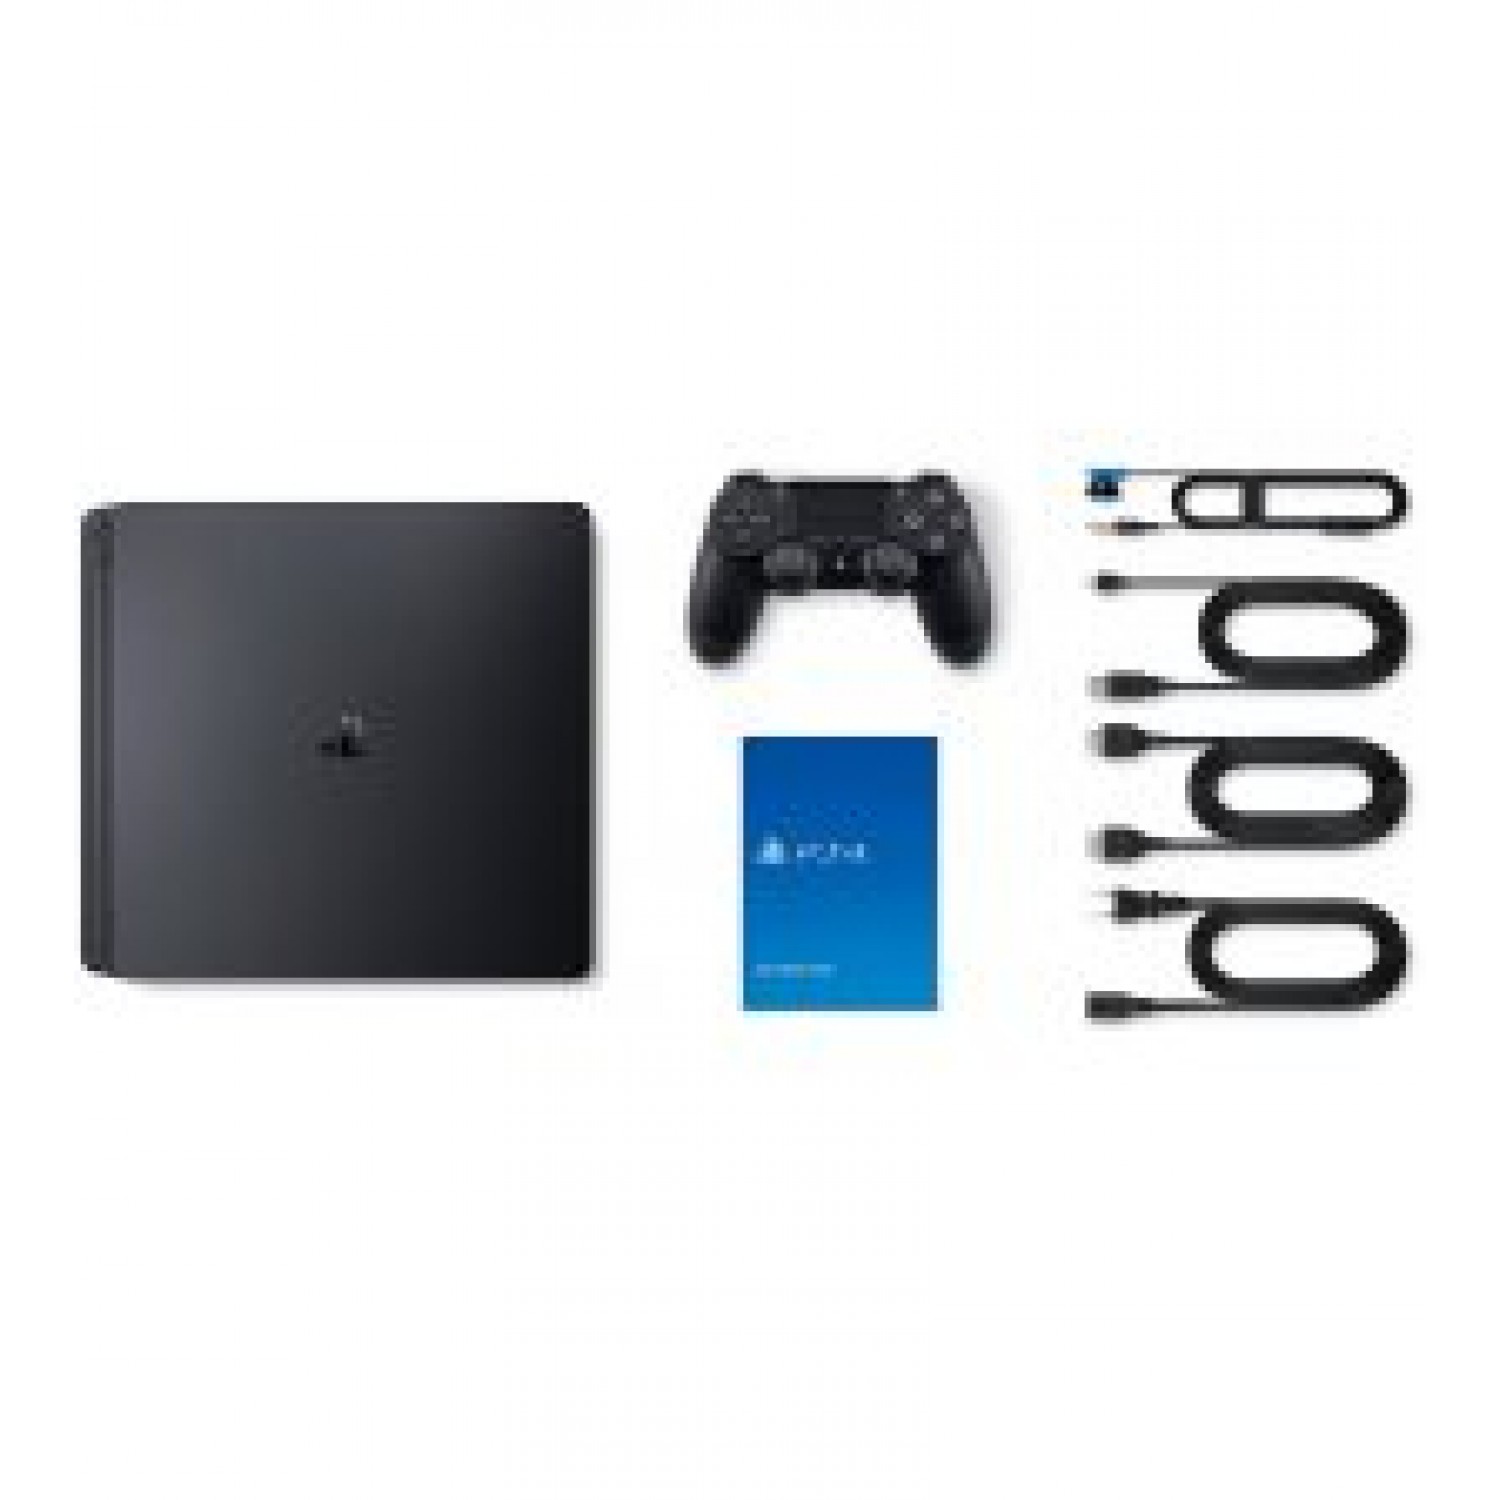 فروش کنسول بازی PlayStation 4 Slim 1TB با قیمت و شرایط مناسب